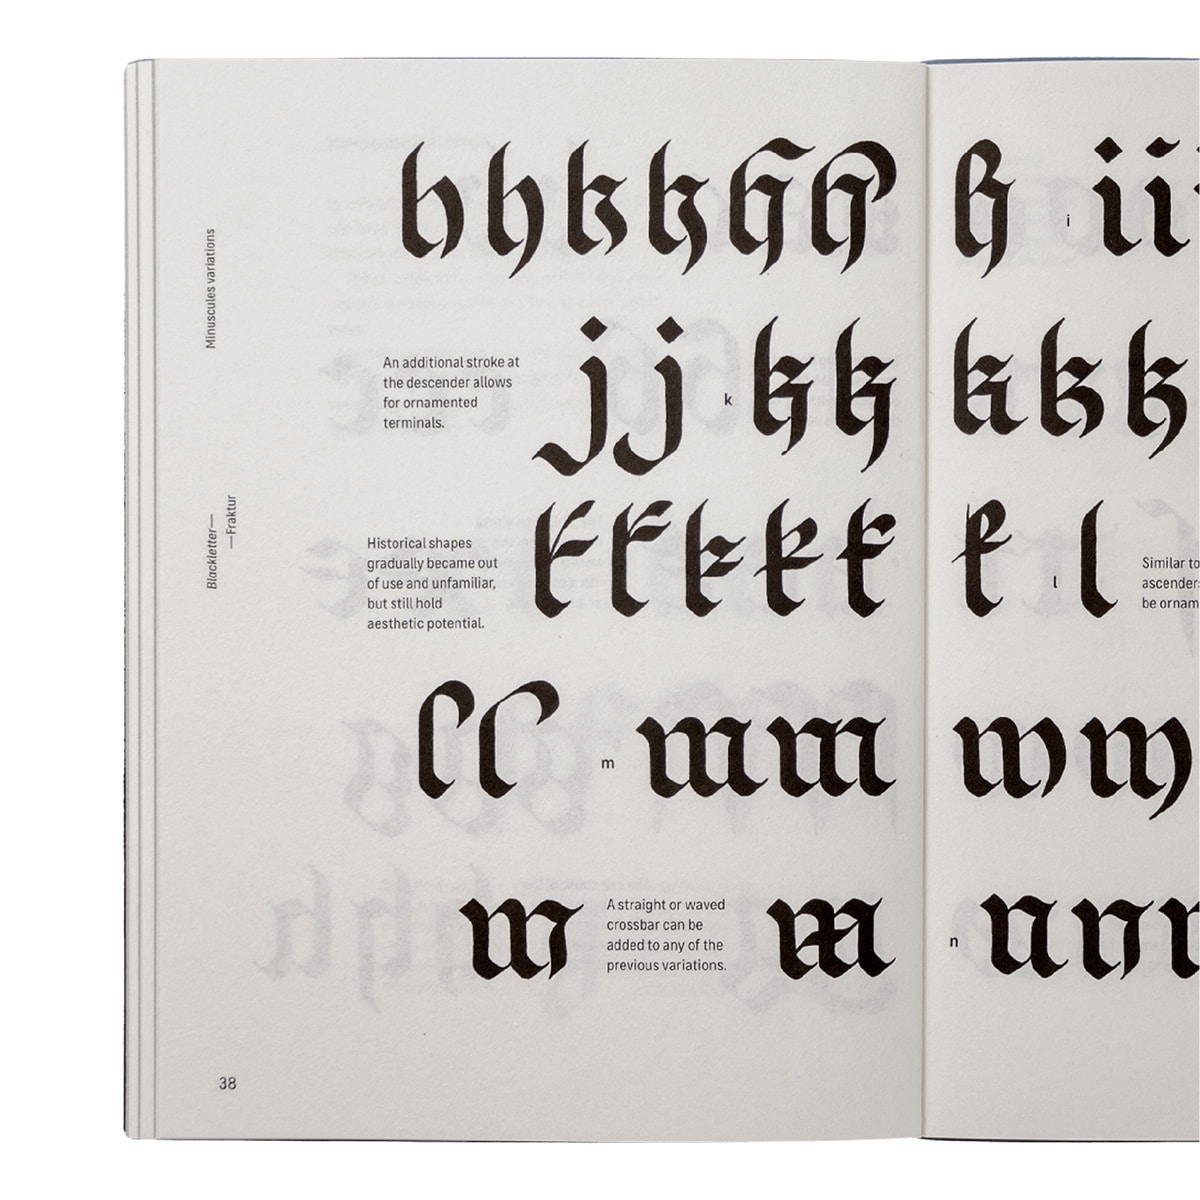 Mehrere Zeilen mit unterschiedlichen Schriftformen der Kalligrafie